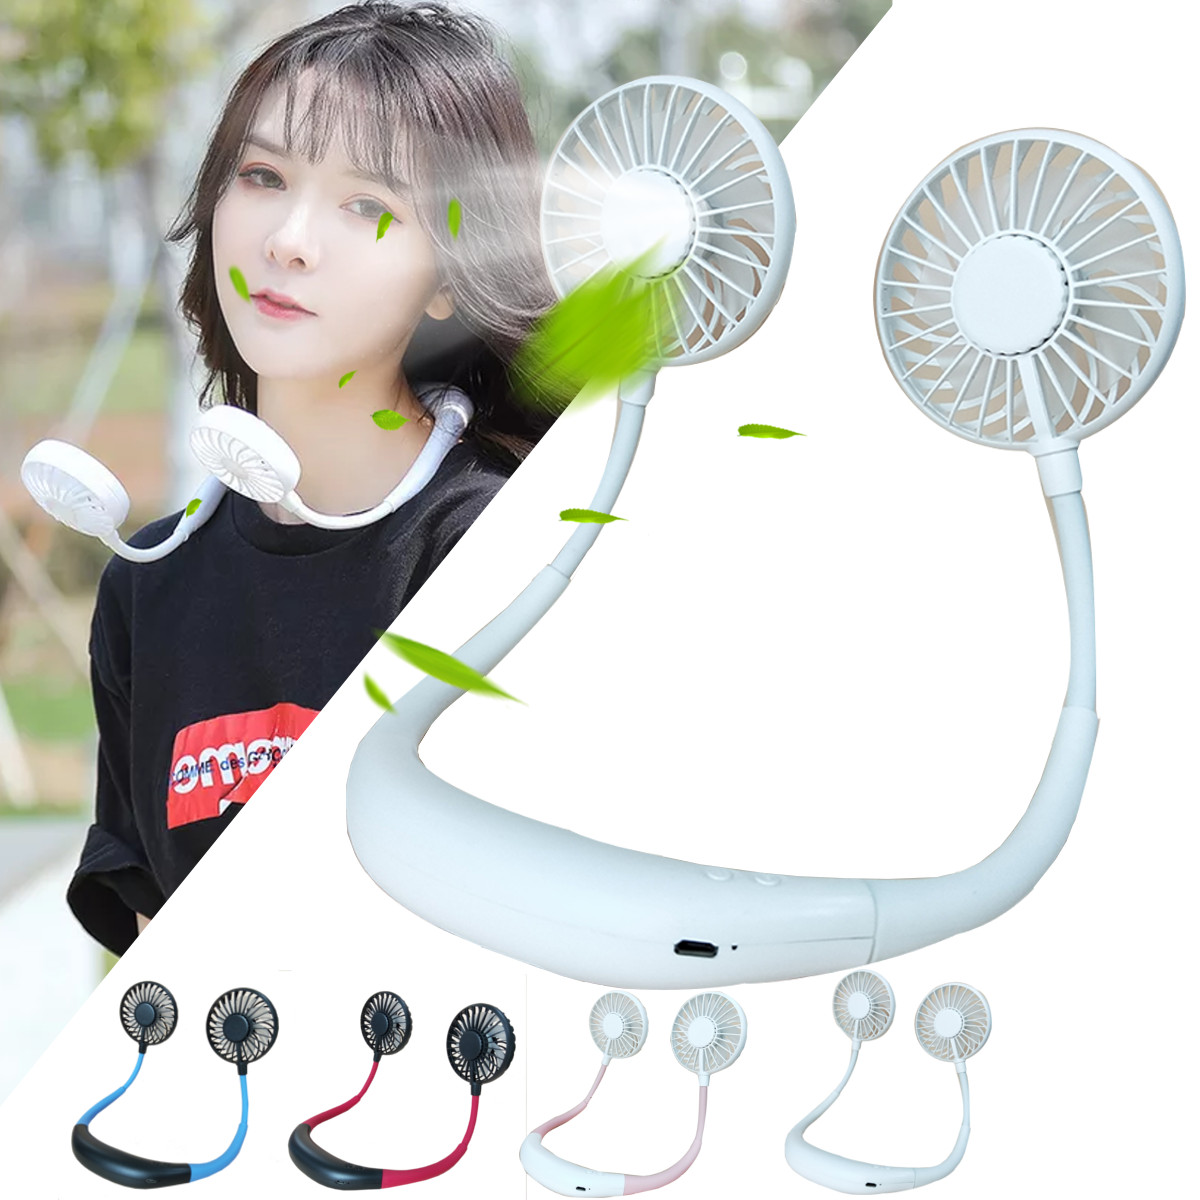 LED Personal Fan Hands-free Min Fan Aromatherapy Portable Li-ion Battery USB Rechargable Hanging Neck Sport Fan Mini Air Fan - Blue 16